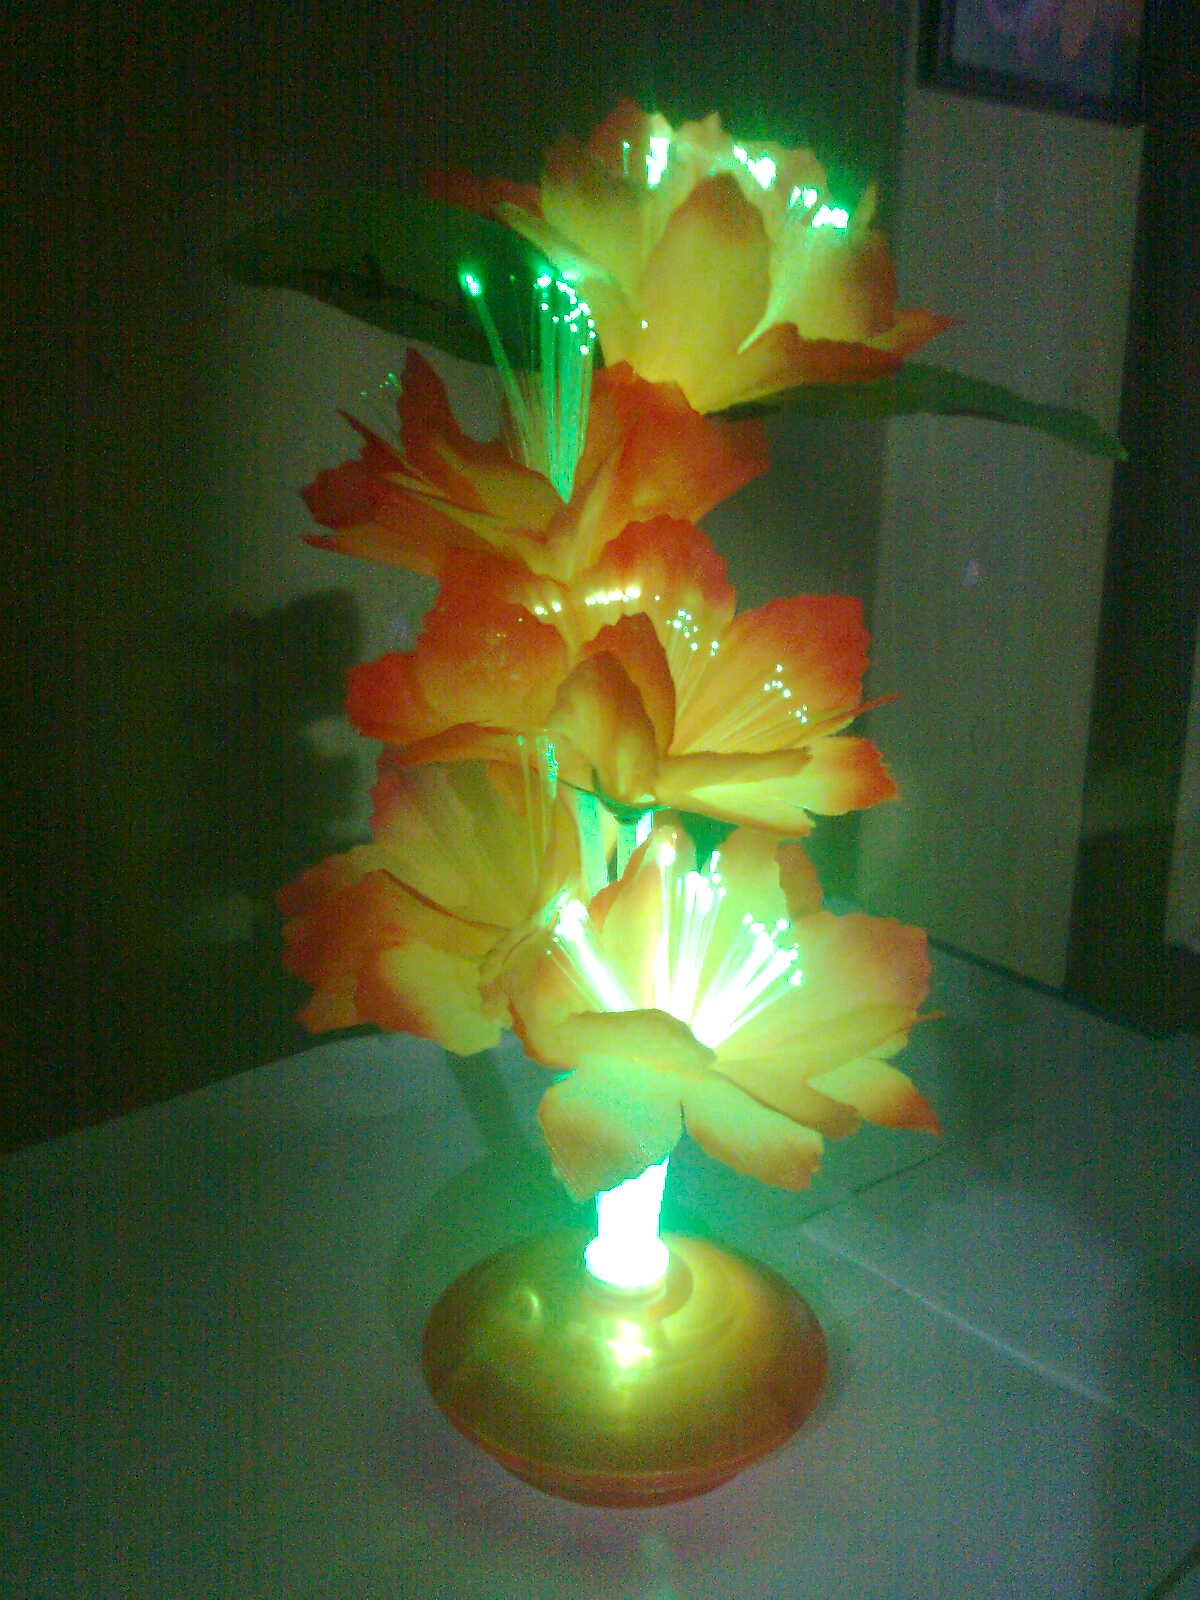  Grosir  Ecer Mainan Unik  bunga  mawar lampu rp 9000